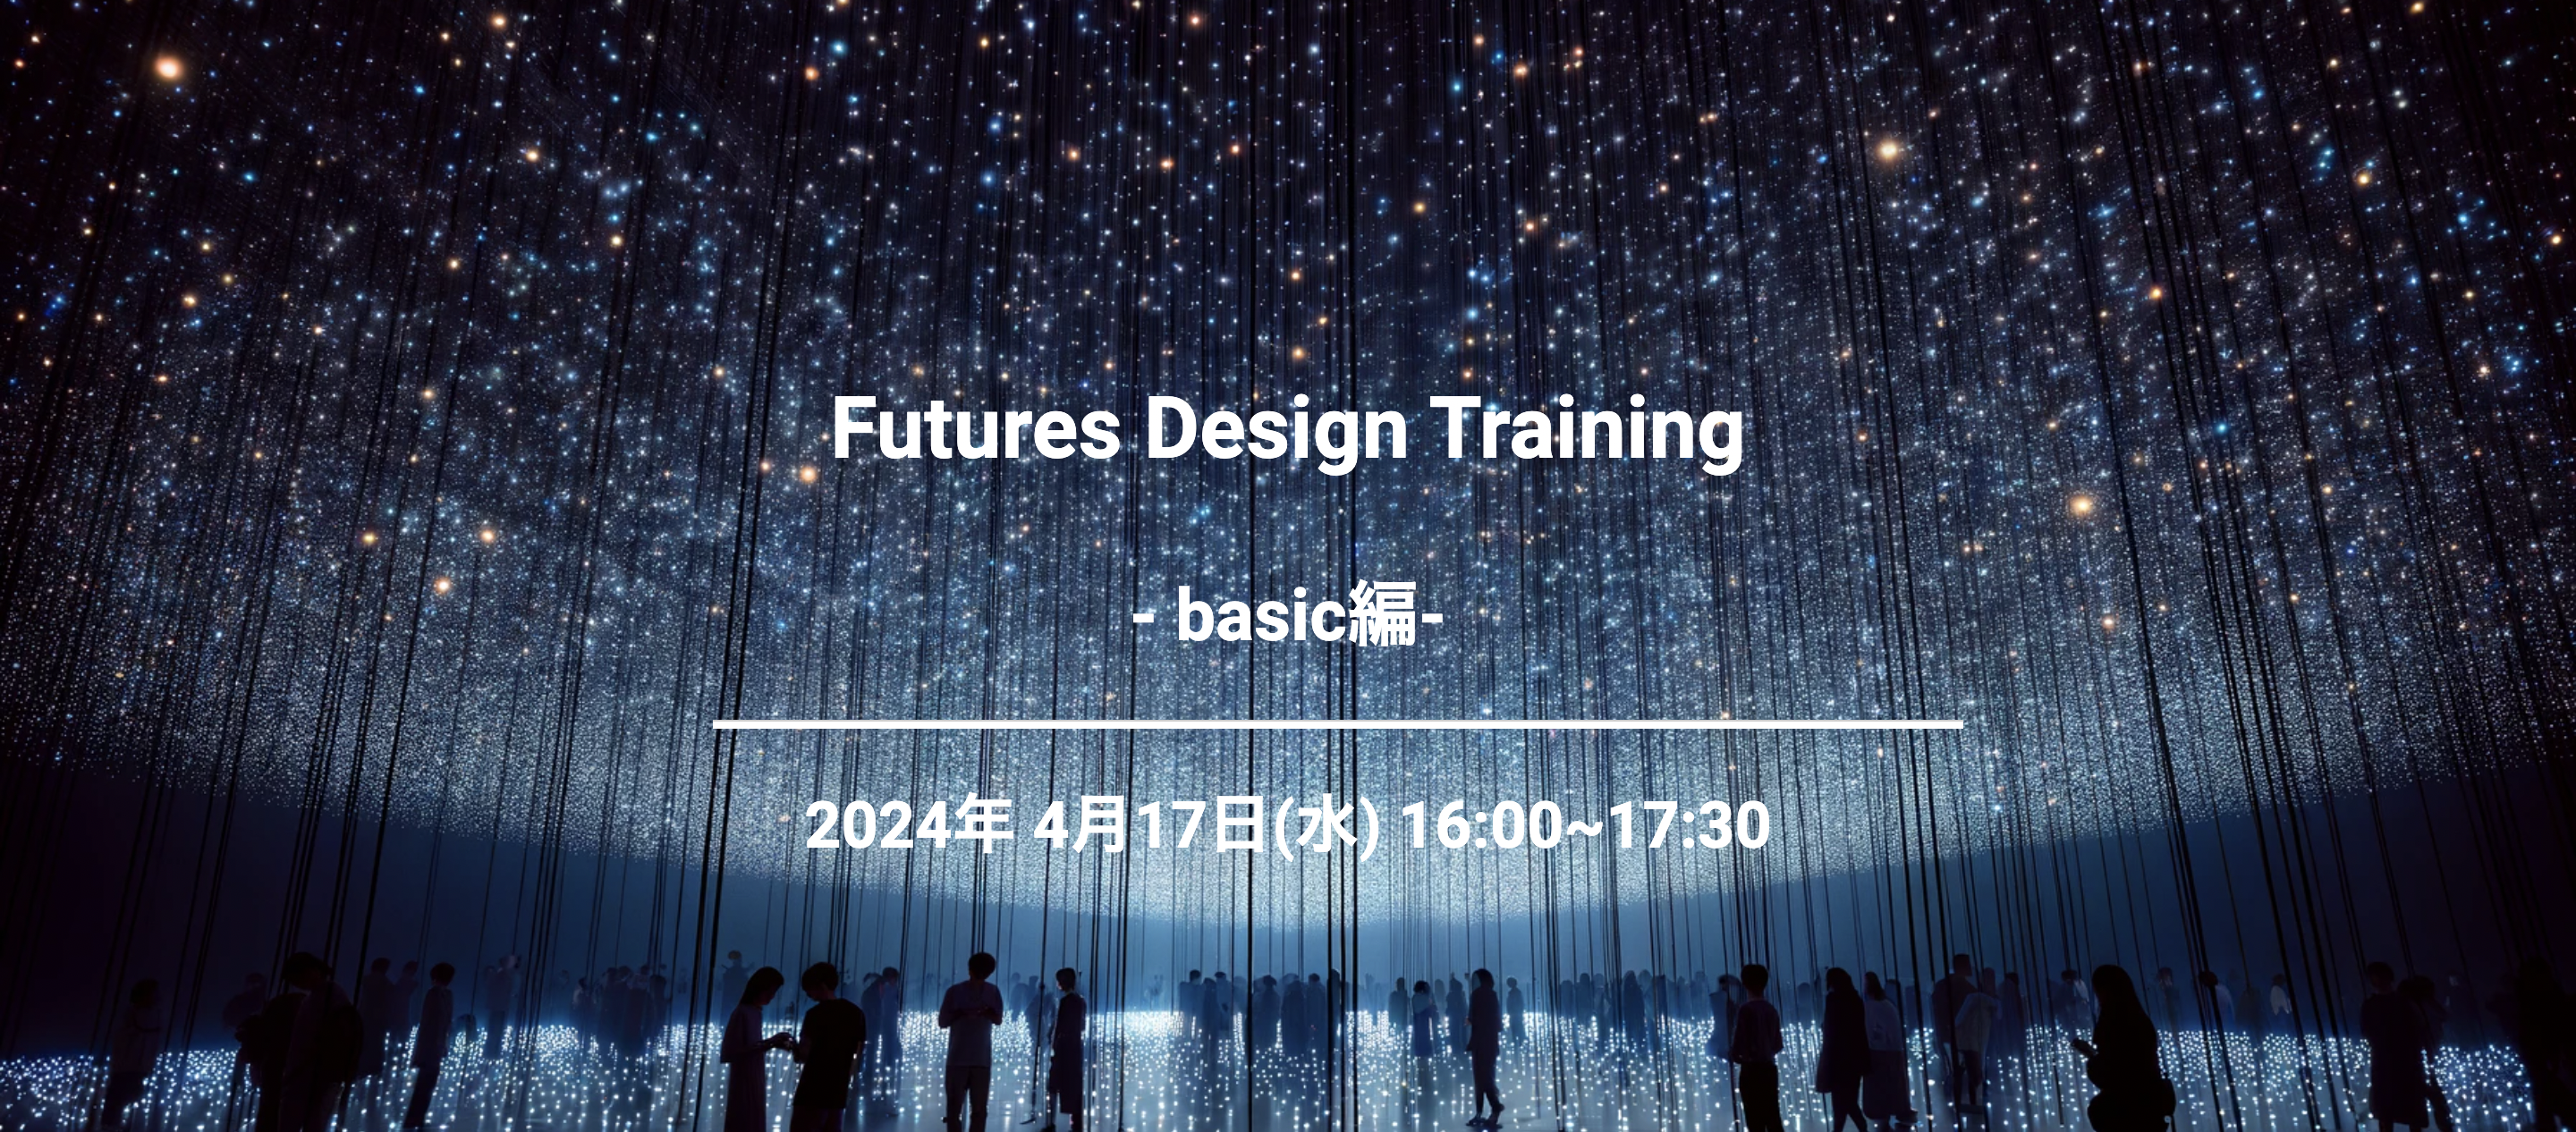 Futures Design Training- Basic編 ツール紹介